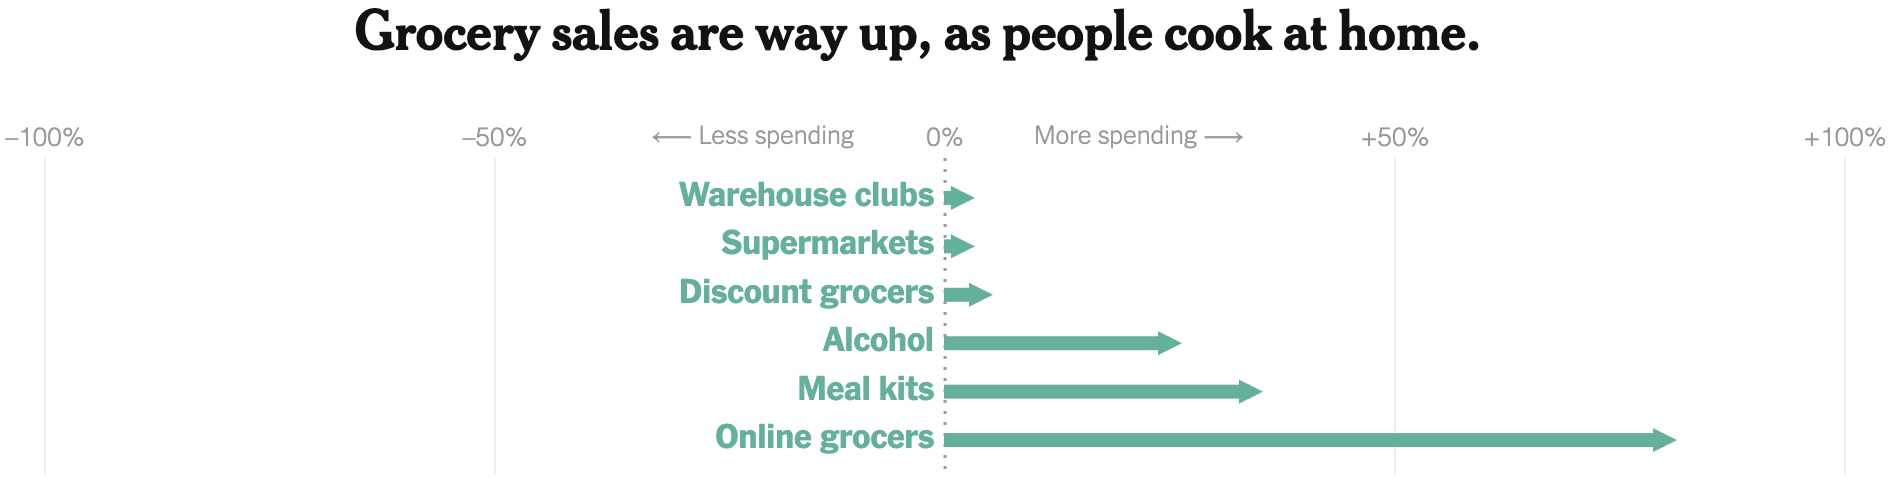 Как в США выросли траты на оптовые магазины, супермаркеты, дешевые магазины, алкоголь, готовые обеды и продажу еды онлайн за неделю, закончившуюся 1 апреля 2020 года, по сравнению с тем же периодом 2019 года. Источник: The New York Times